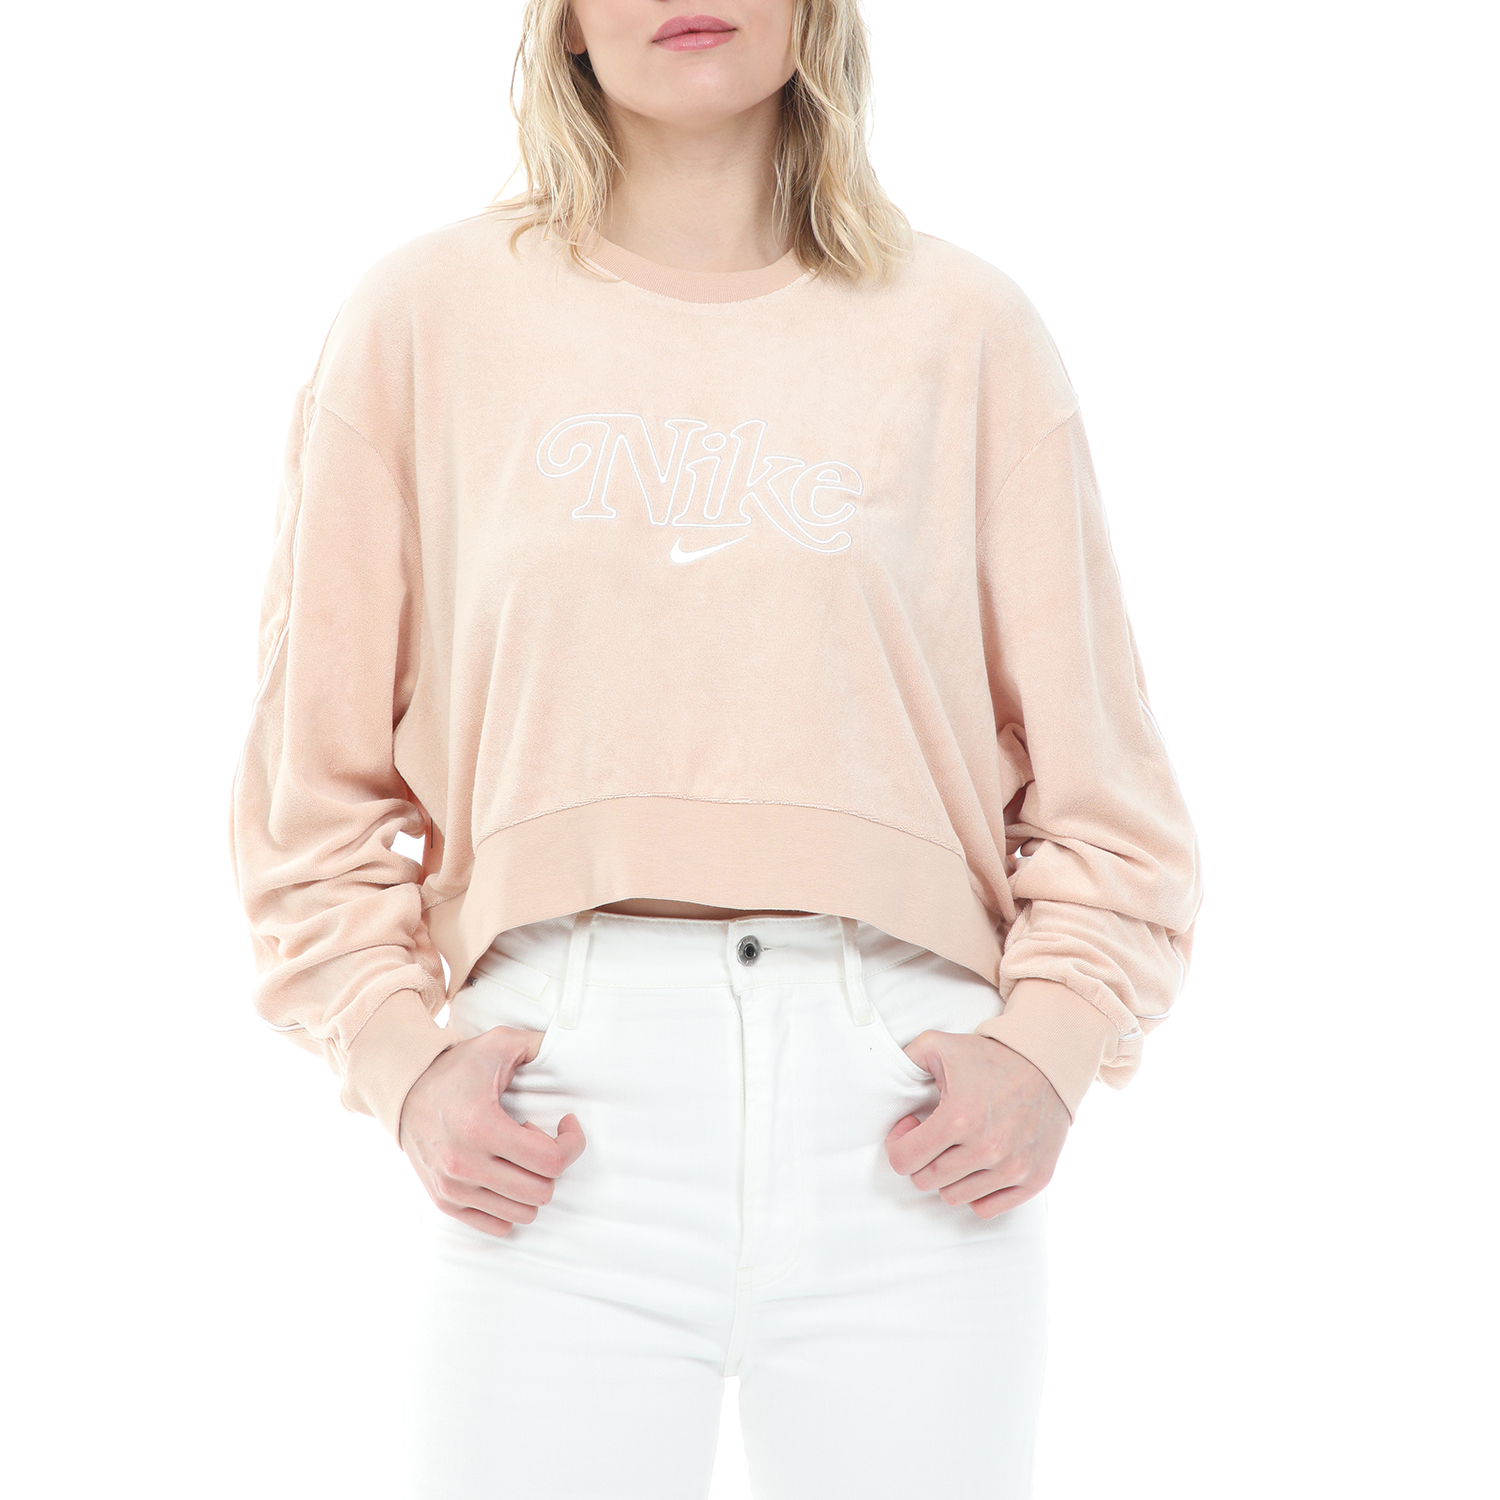 Γυναικεία/Ρούχα/Φούτερ/Μπλούζες NIKE - Γυναικεία cropped φούτερ μπλούζα NIKE NSW RETRO FEMME CREW TERRY ροζ